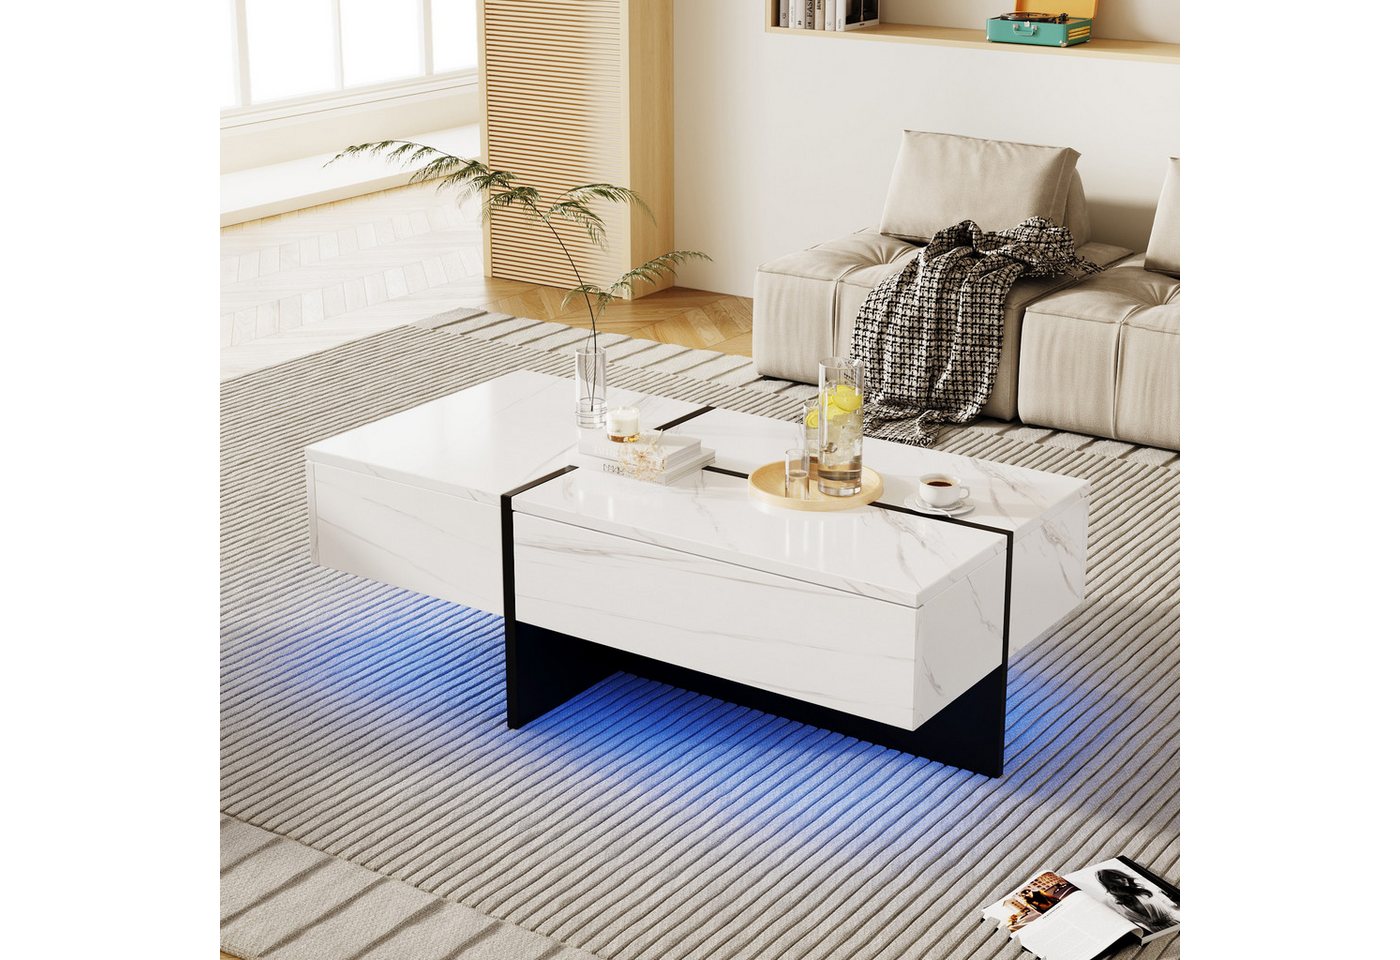 XDOVET Couchtisch Hochglanz Couchtisch, Marmorimitat und farblich passender Tisch, Wohnzimmermöbel, mit App-gesteuertem LED-Beleuchtungssystem von XDOVET